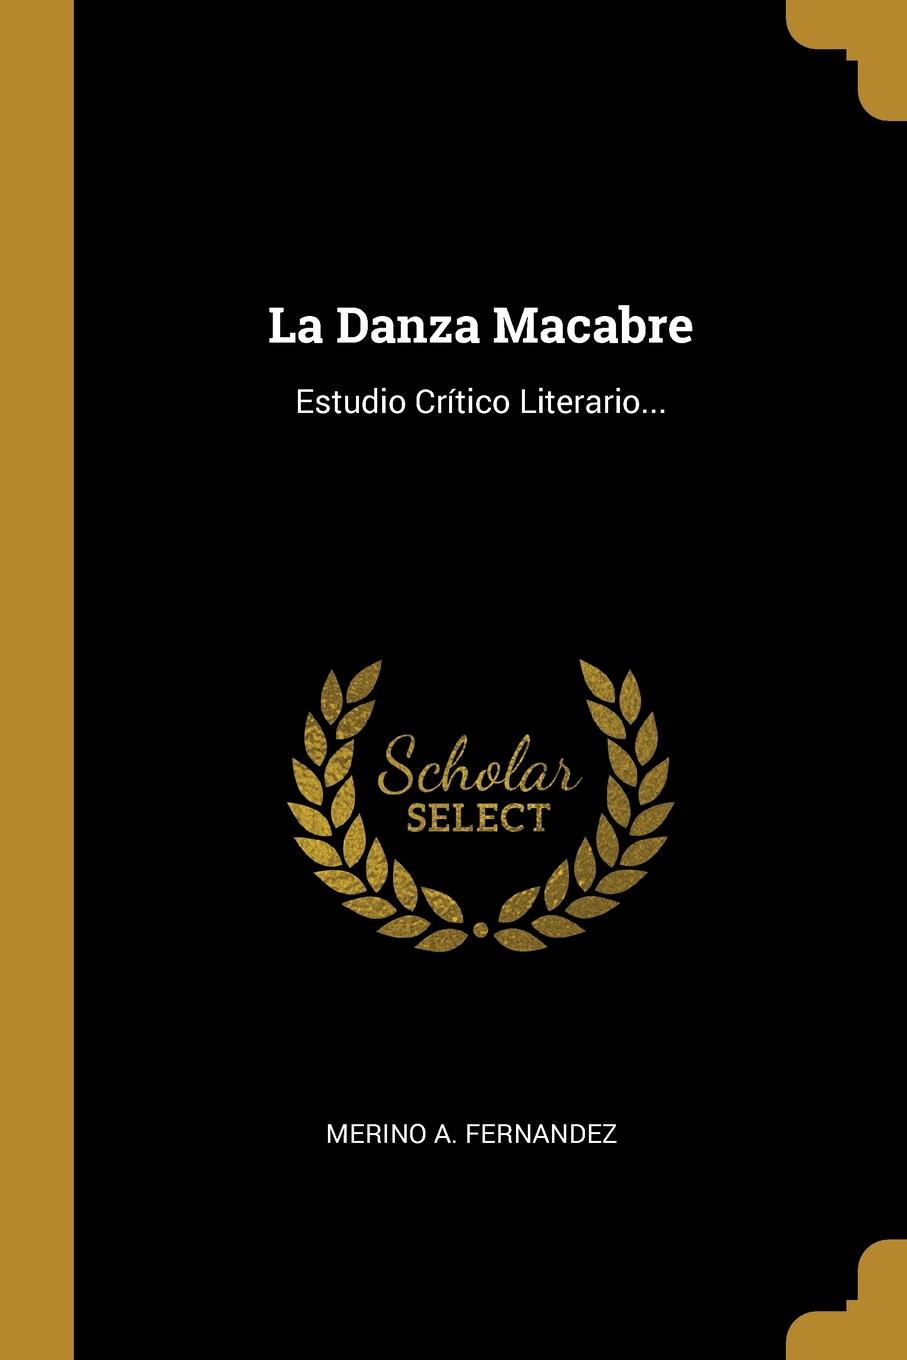 La Danza Macabre. Estudio Critico Literario...